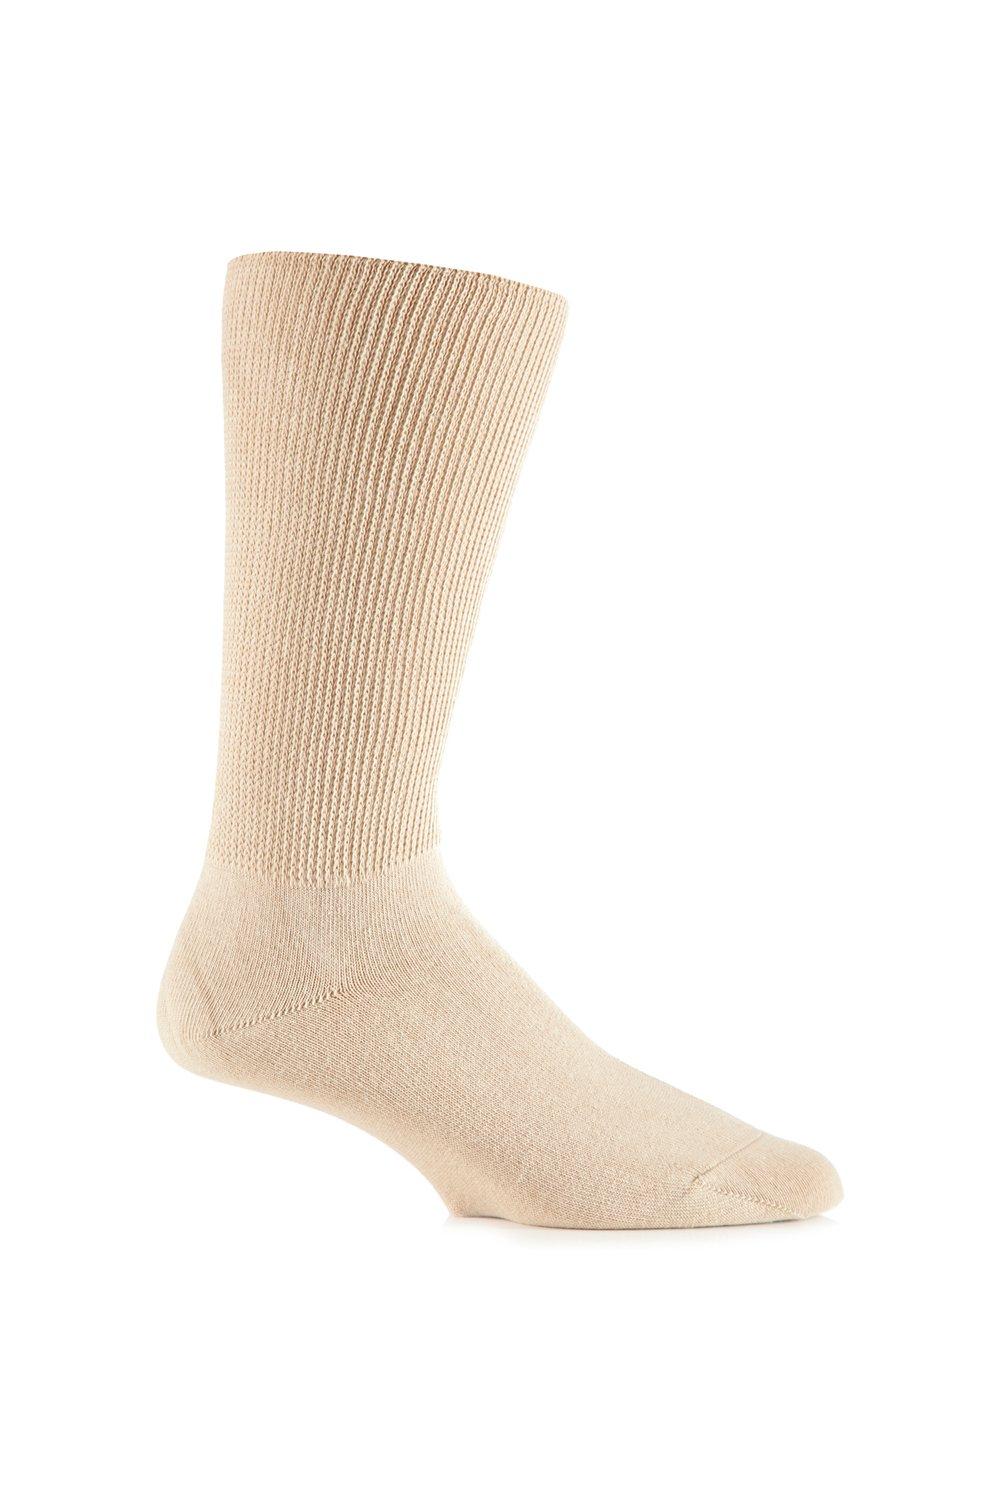 1 Pair Footnurse Oedema Extra Wide Cotton Socks